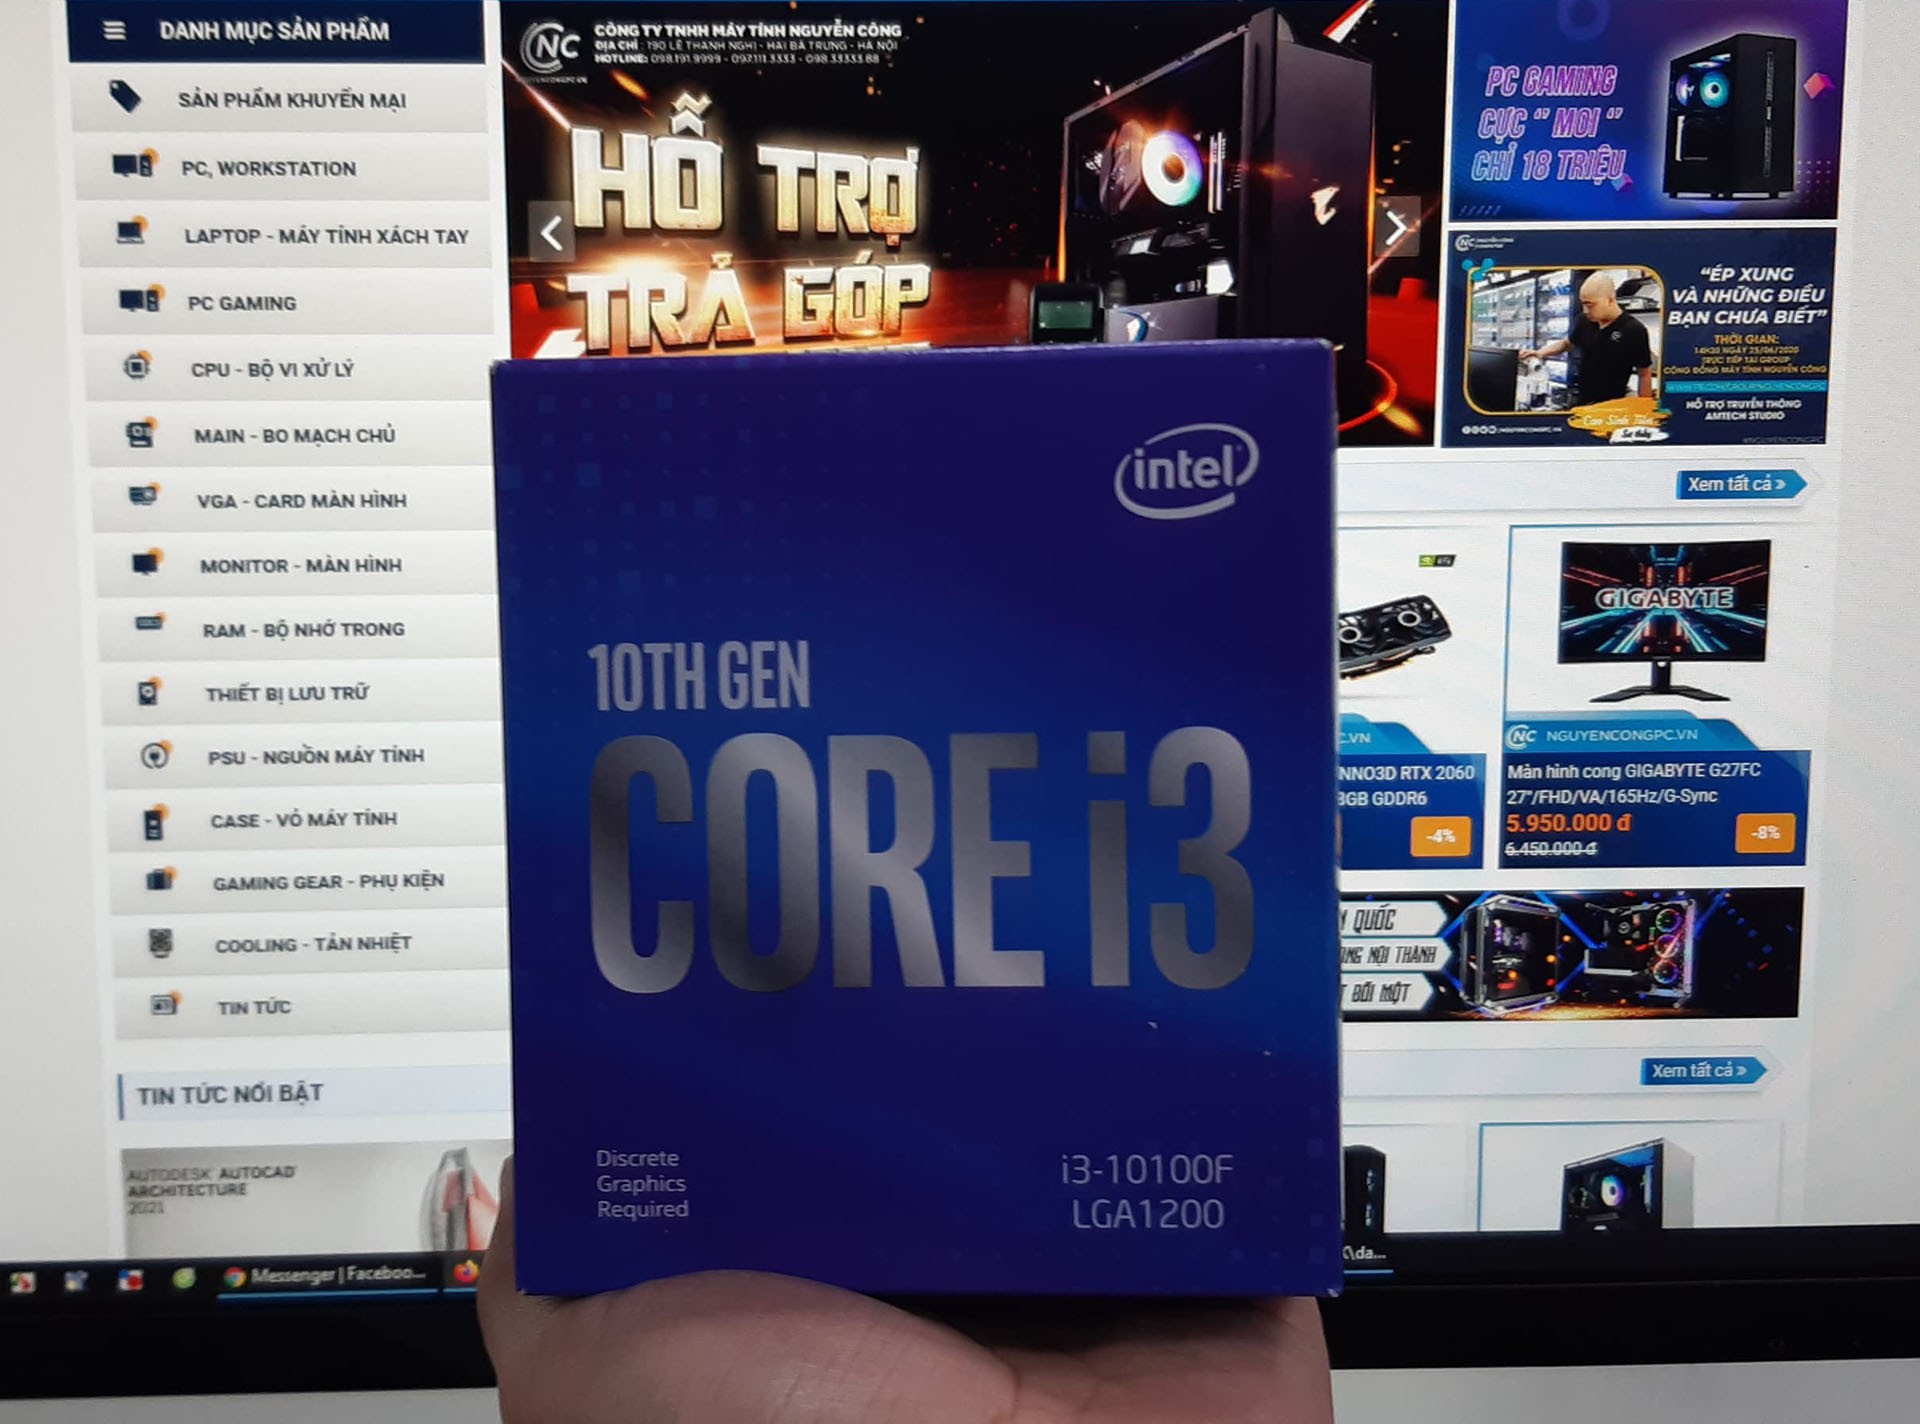 Bộ xử lý Intel Core i3-10100F bộ nhớ đệm 6M, lên đến 4,30 GHz